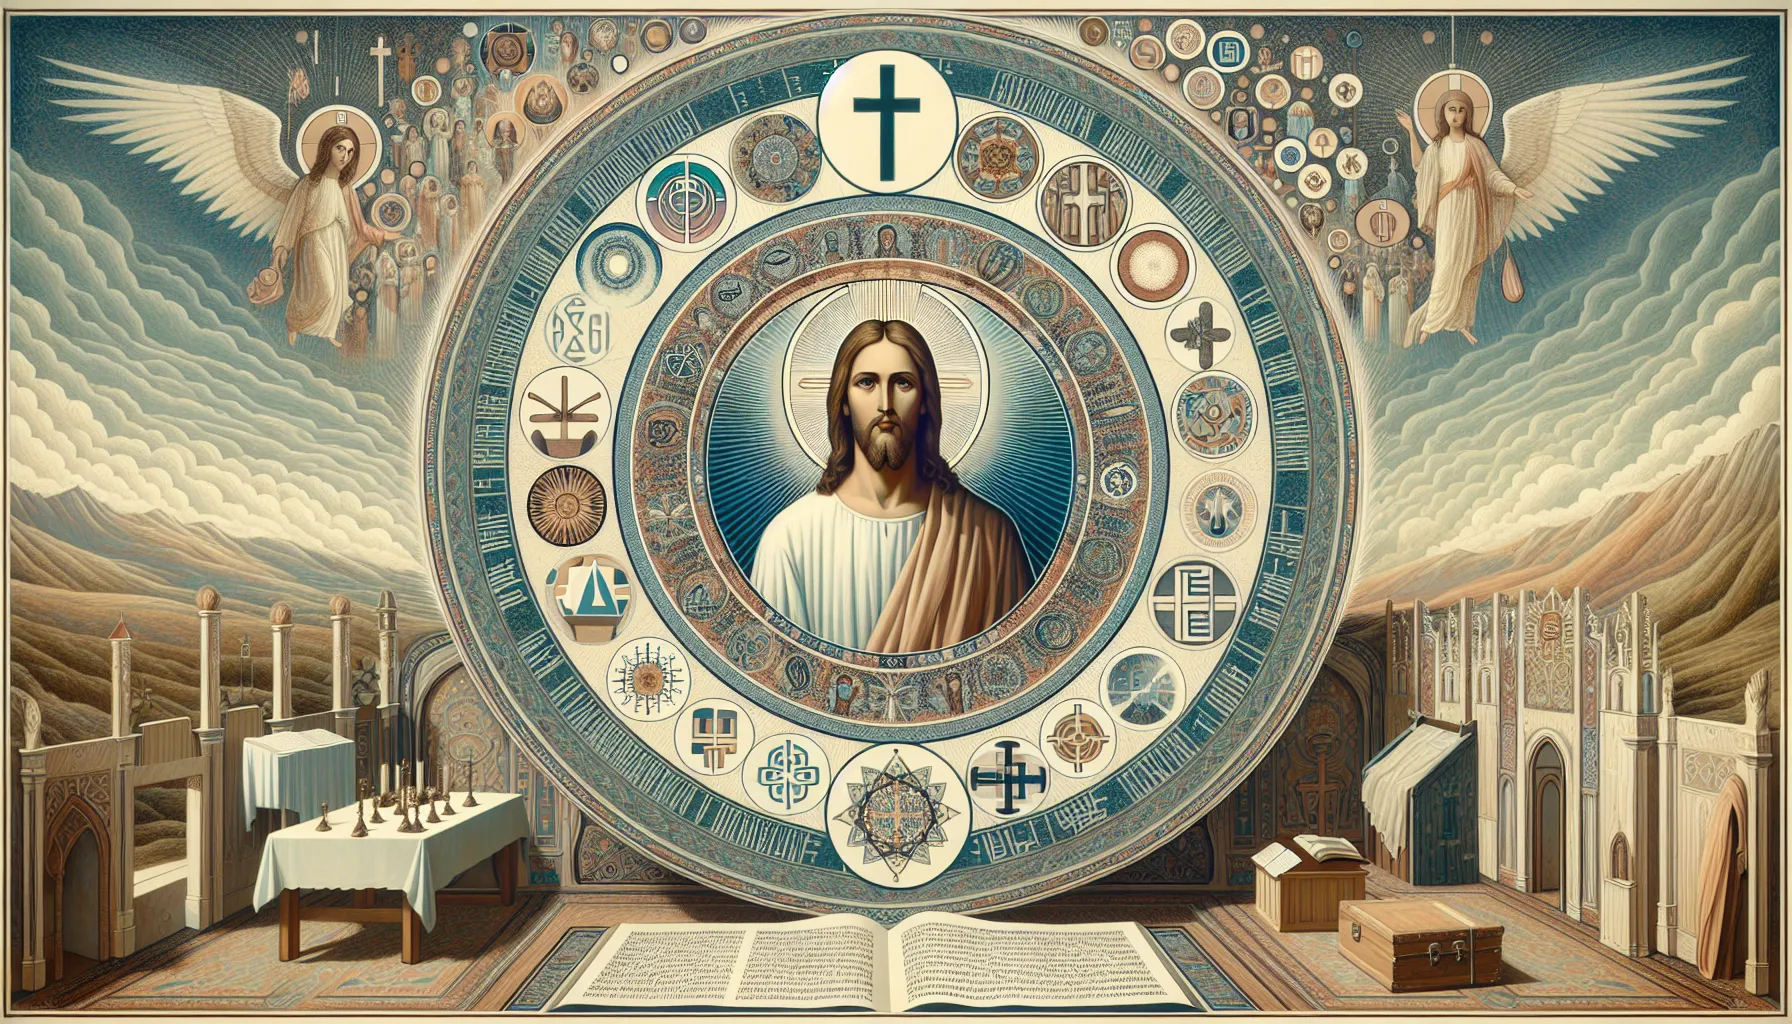 Imagen representativa del simbolismo religioso en el Pentecostalismo Unicitario centrado en Solo Jesús